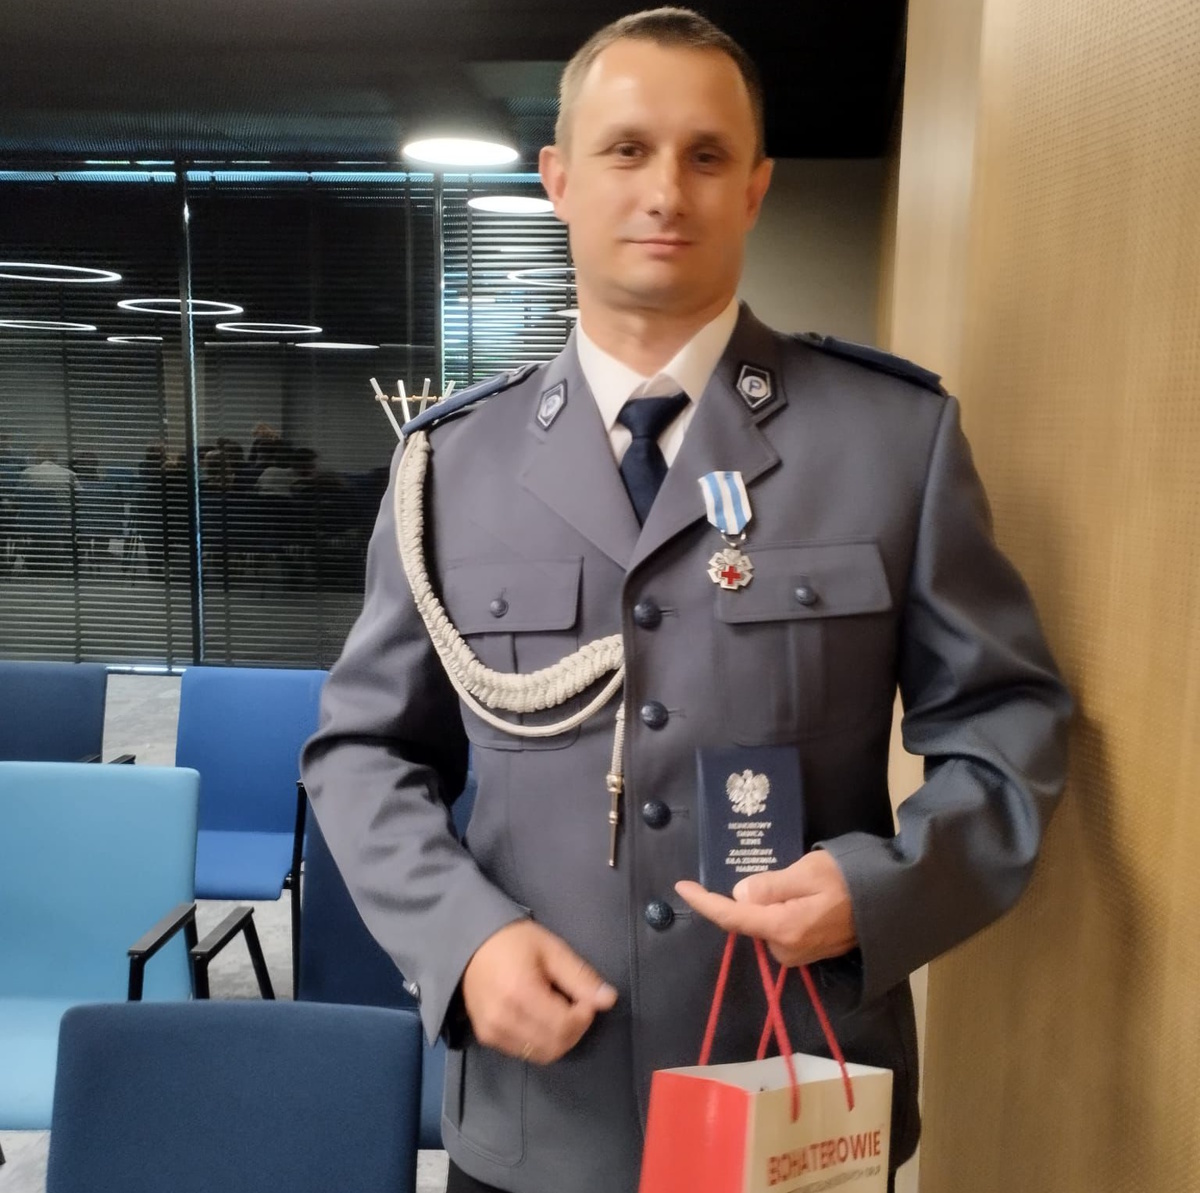 na zdjęciu dzielnicowy Modrzyński z legitymacją honorowego krwiodawcy w ręce oraz medalem na mundurze